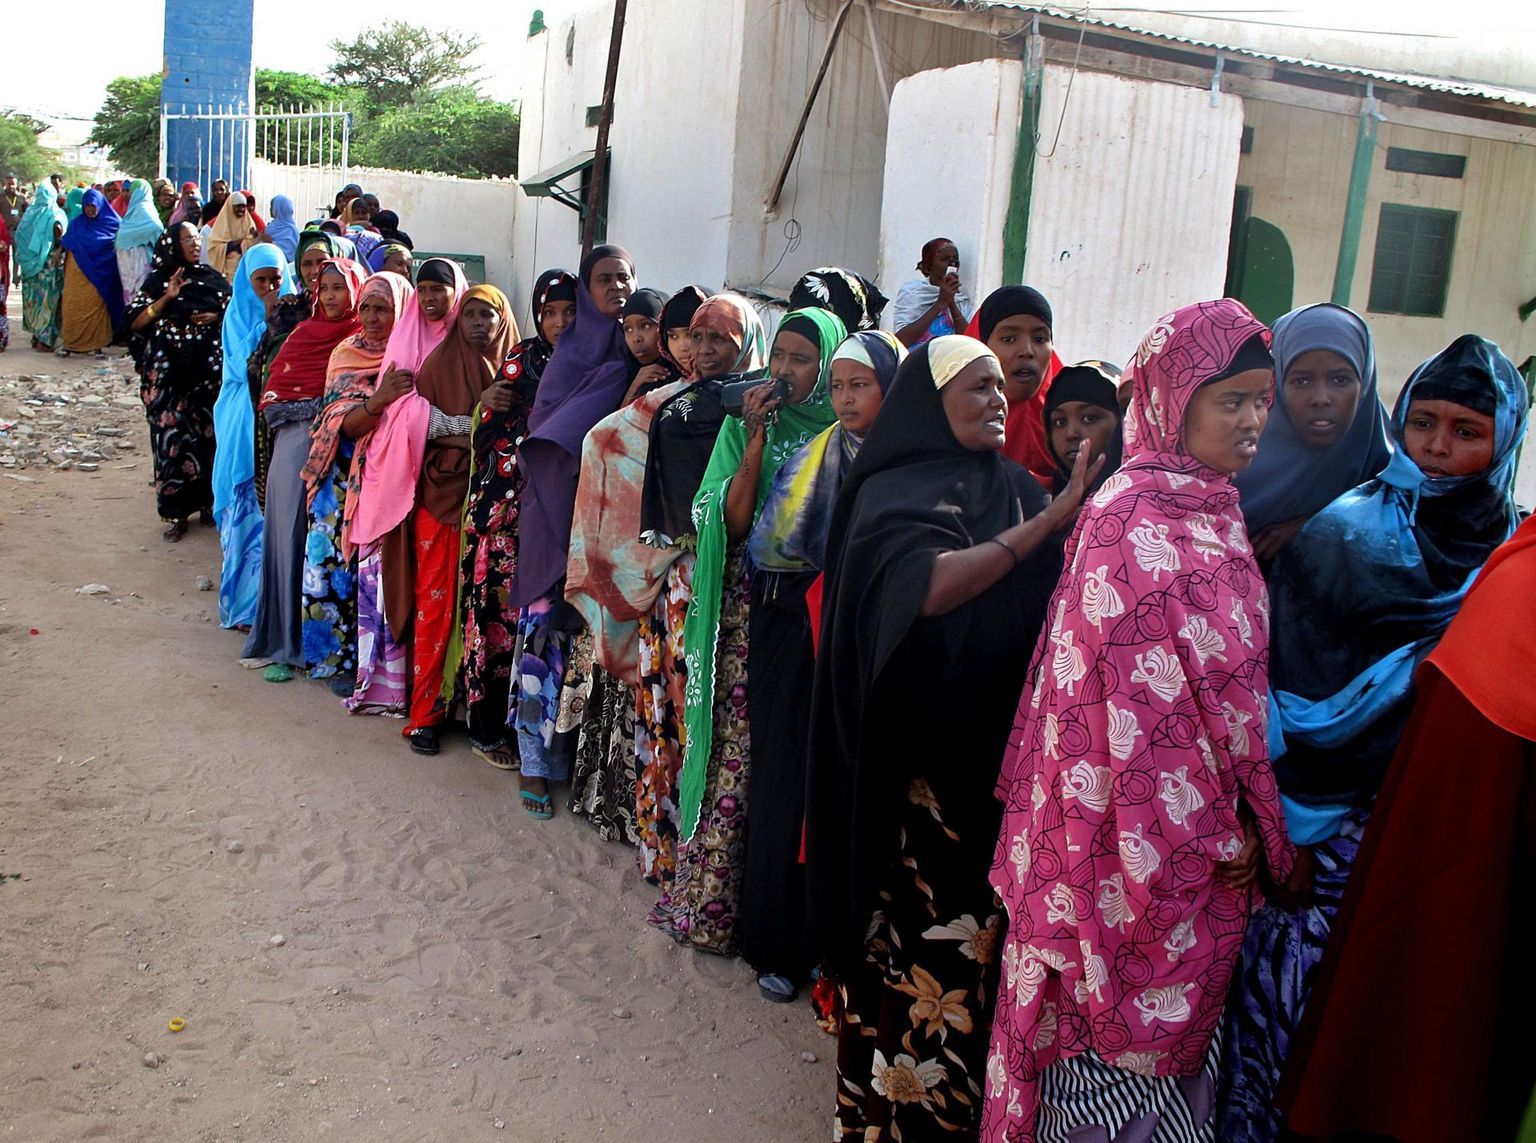 Somaalimaa naised 2010. aastal pealinnas Hargeysas presidendivalimistel osalemas.  FOTO: Ali Musa / AFP / Scanpix